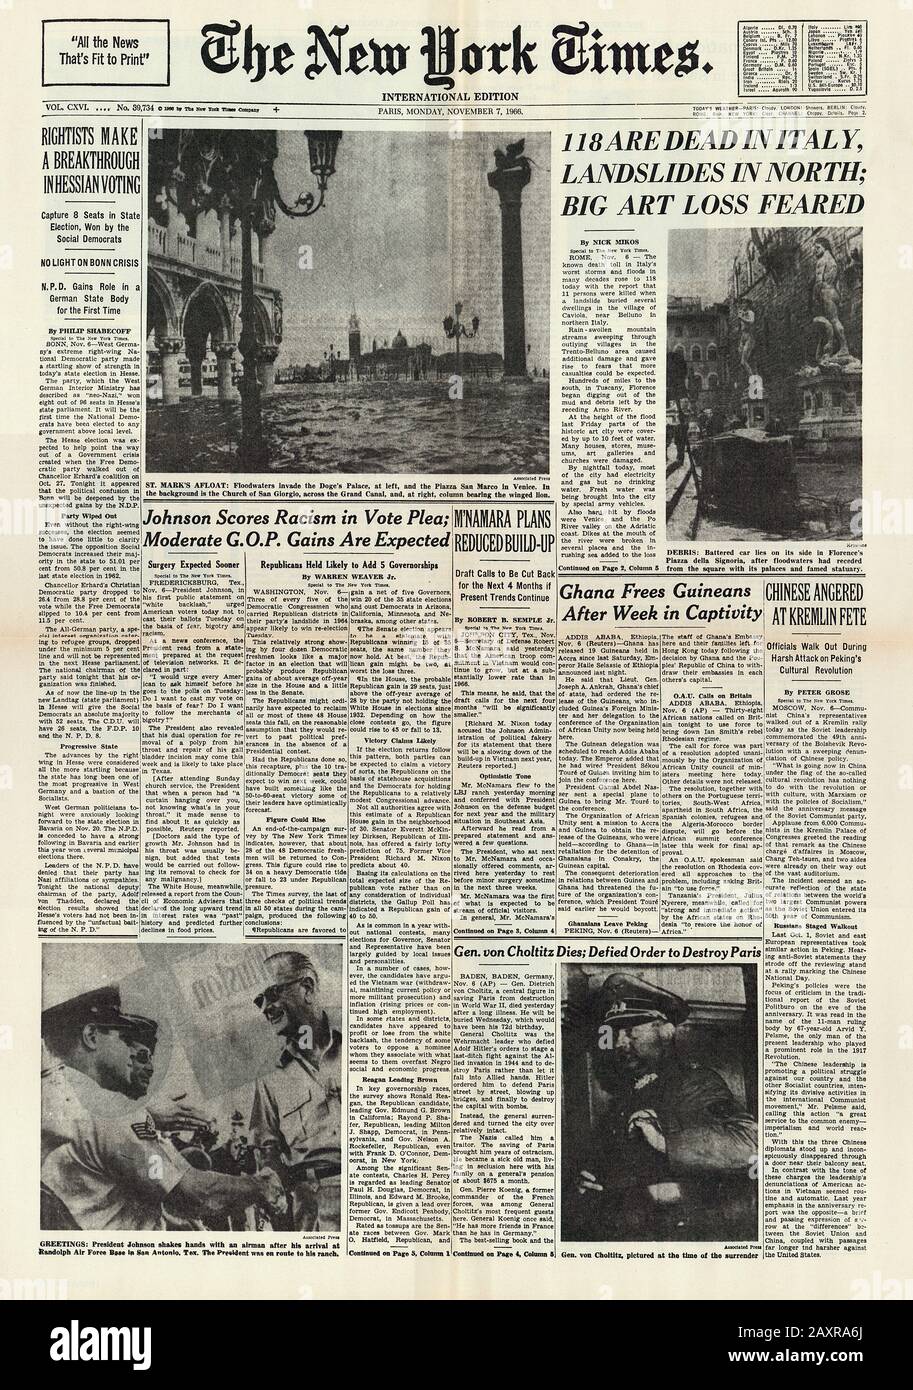 1966 , 7 novembre , FIRENZE, ITALIE : La première page du journal des États-Unis LE NEW YORK TIMES concernant la catastrophe d'inondation qui a dévasté la ville DE FIRENZE et inondé VENISE le même jour. - VENISE - FLORENCE - quotidiano - giornale - Cover - copertina - prima pagina - ALLUVIONE - detrdo naturale - inondazione - ITALIA - FOTO STORICHE - HISTORY - GEOGRAFIA - GEOGRAFIA - GEOGRAFIA - FOTO STORICHE - HISTORY - HISTORIQUE - newslines - notiario - notiziario - notizia - notiziose - notiziose - notiziose - notizia - notiziose - no - Naziste général Dietrich von CHOLTITITZ --- Archivio GBB Banque D'Images